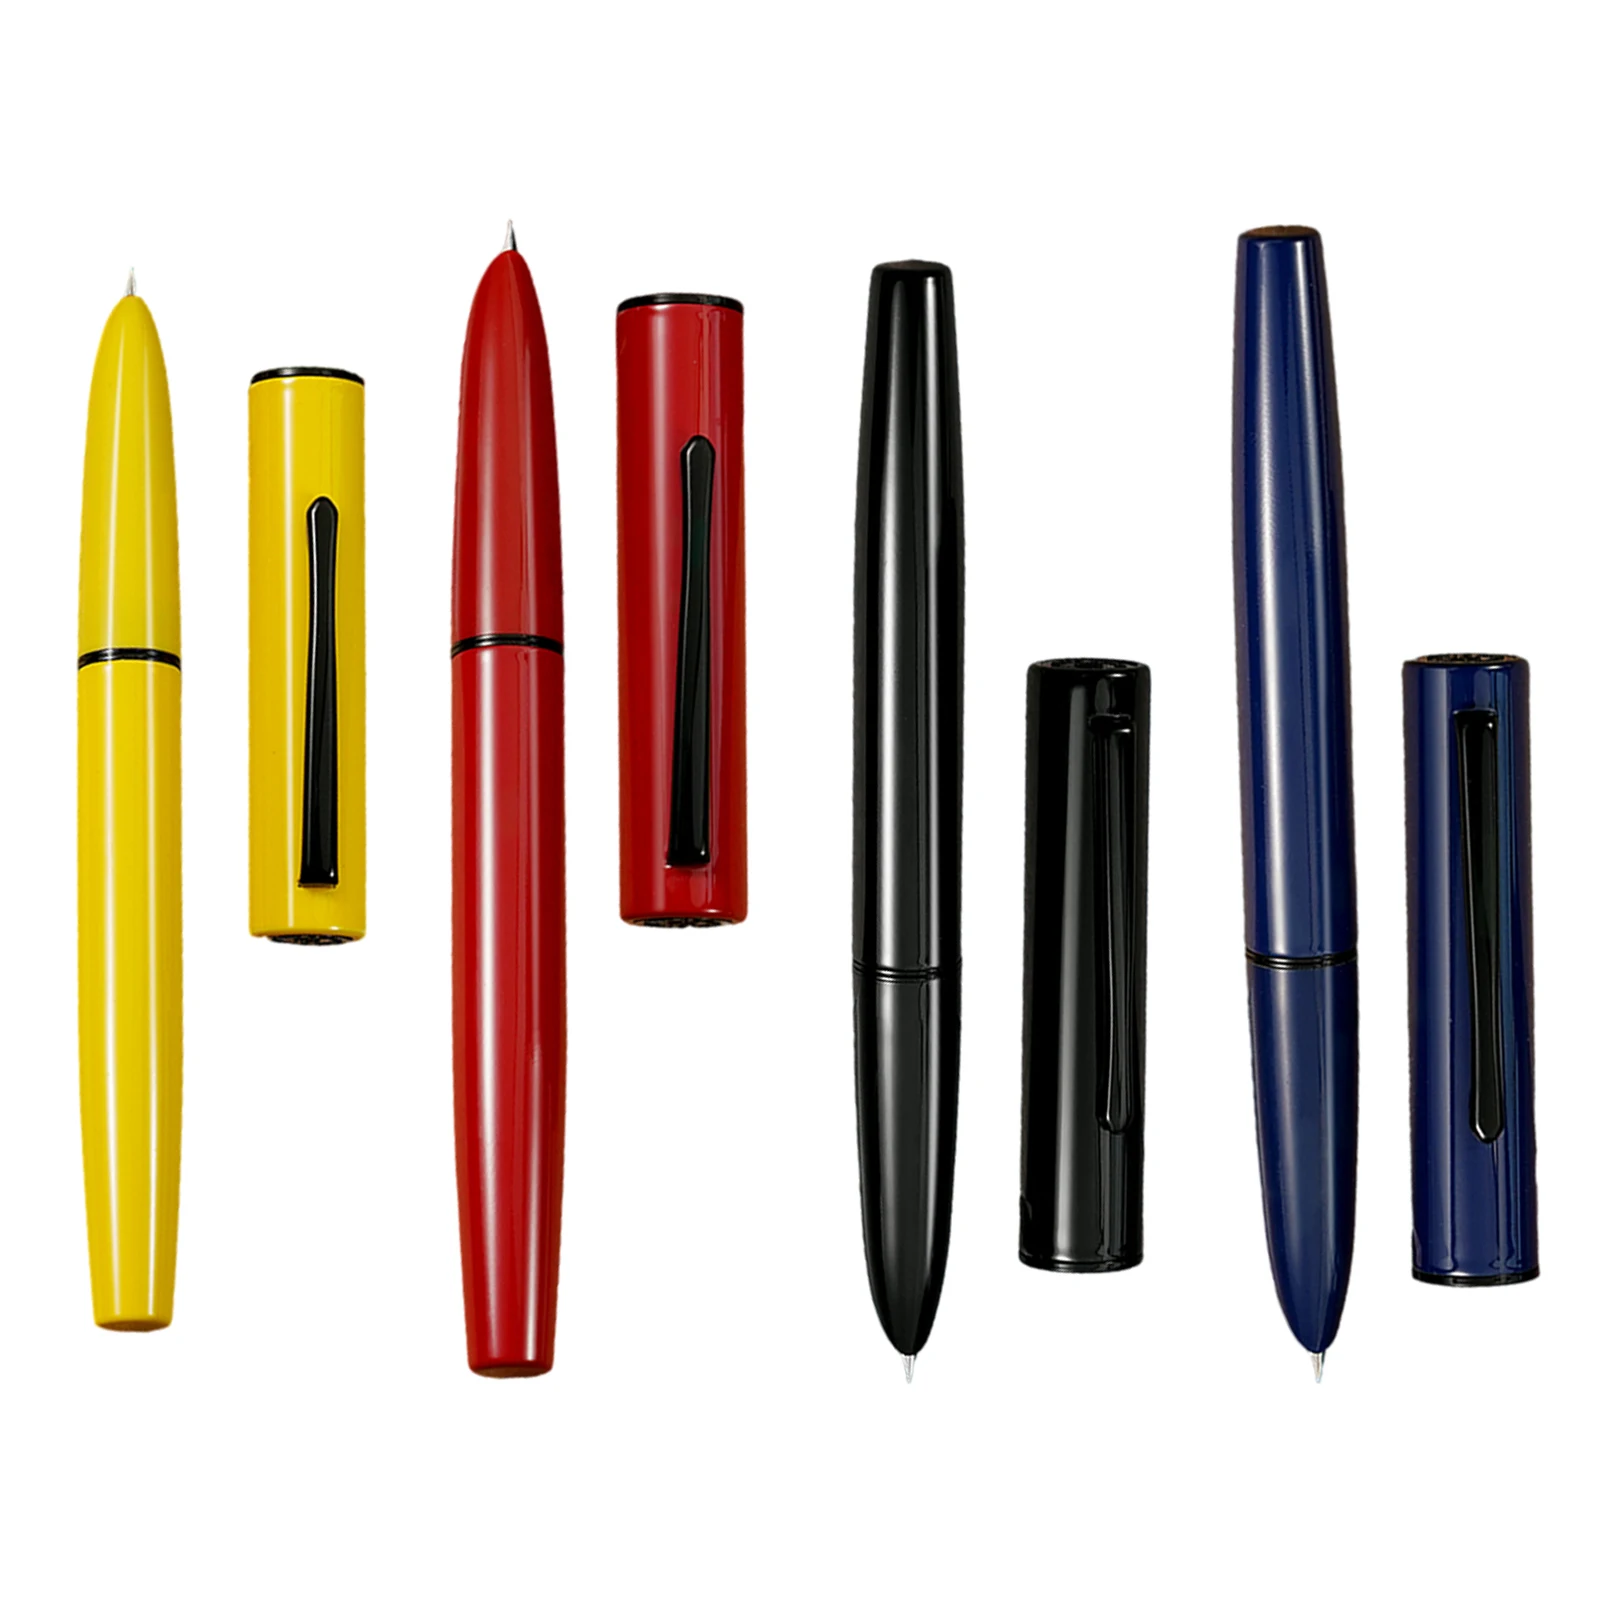 

Ручка перьевая Hongdian C1 классическая, перьевая ручка с капюшоном EF/F, с чернильными наконечниками, принадлежности для бизнеса, школы и офиса, подарочные ручки